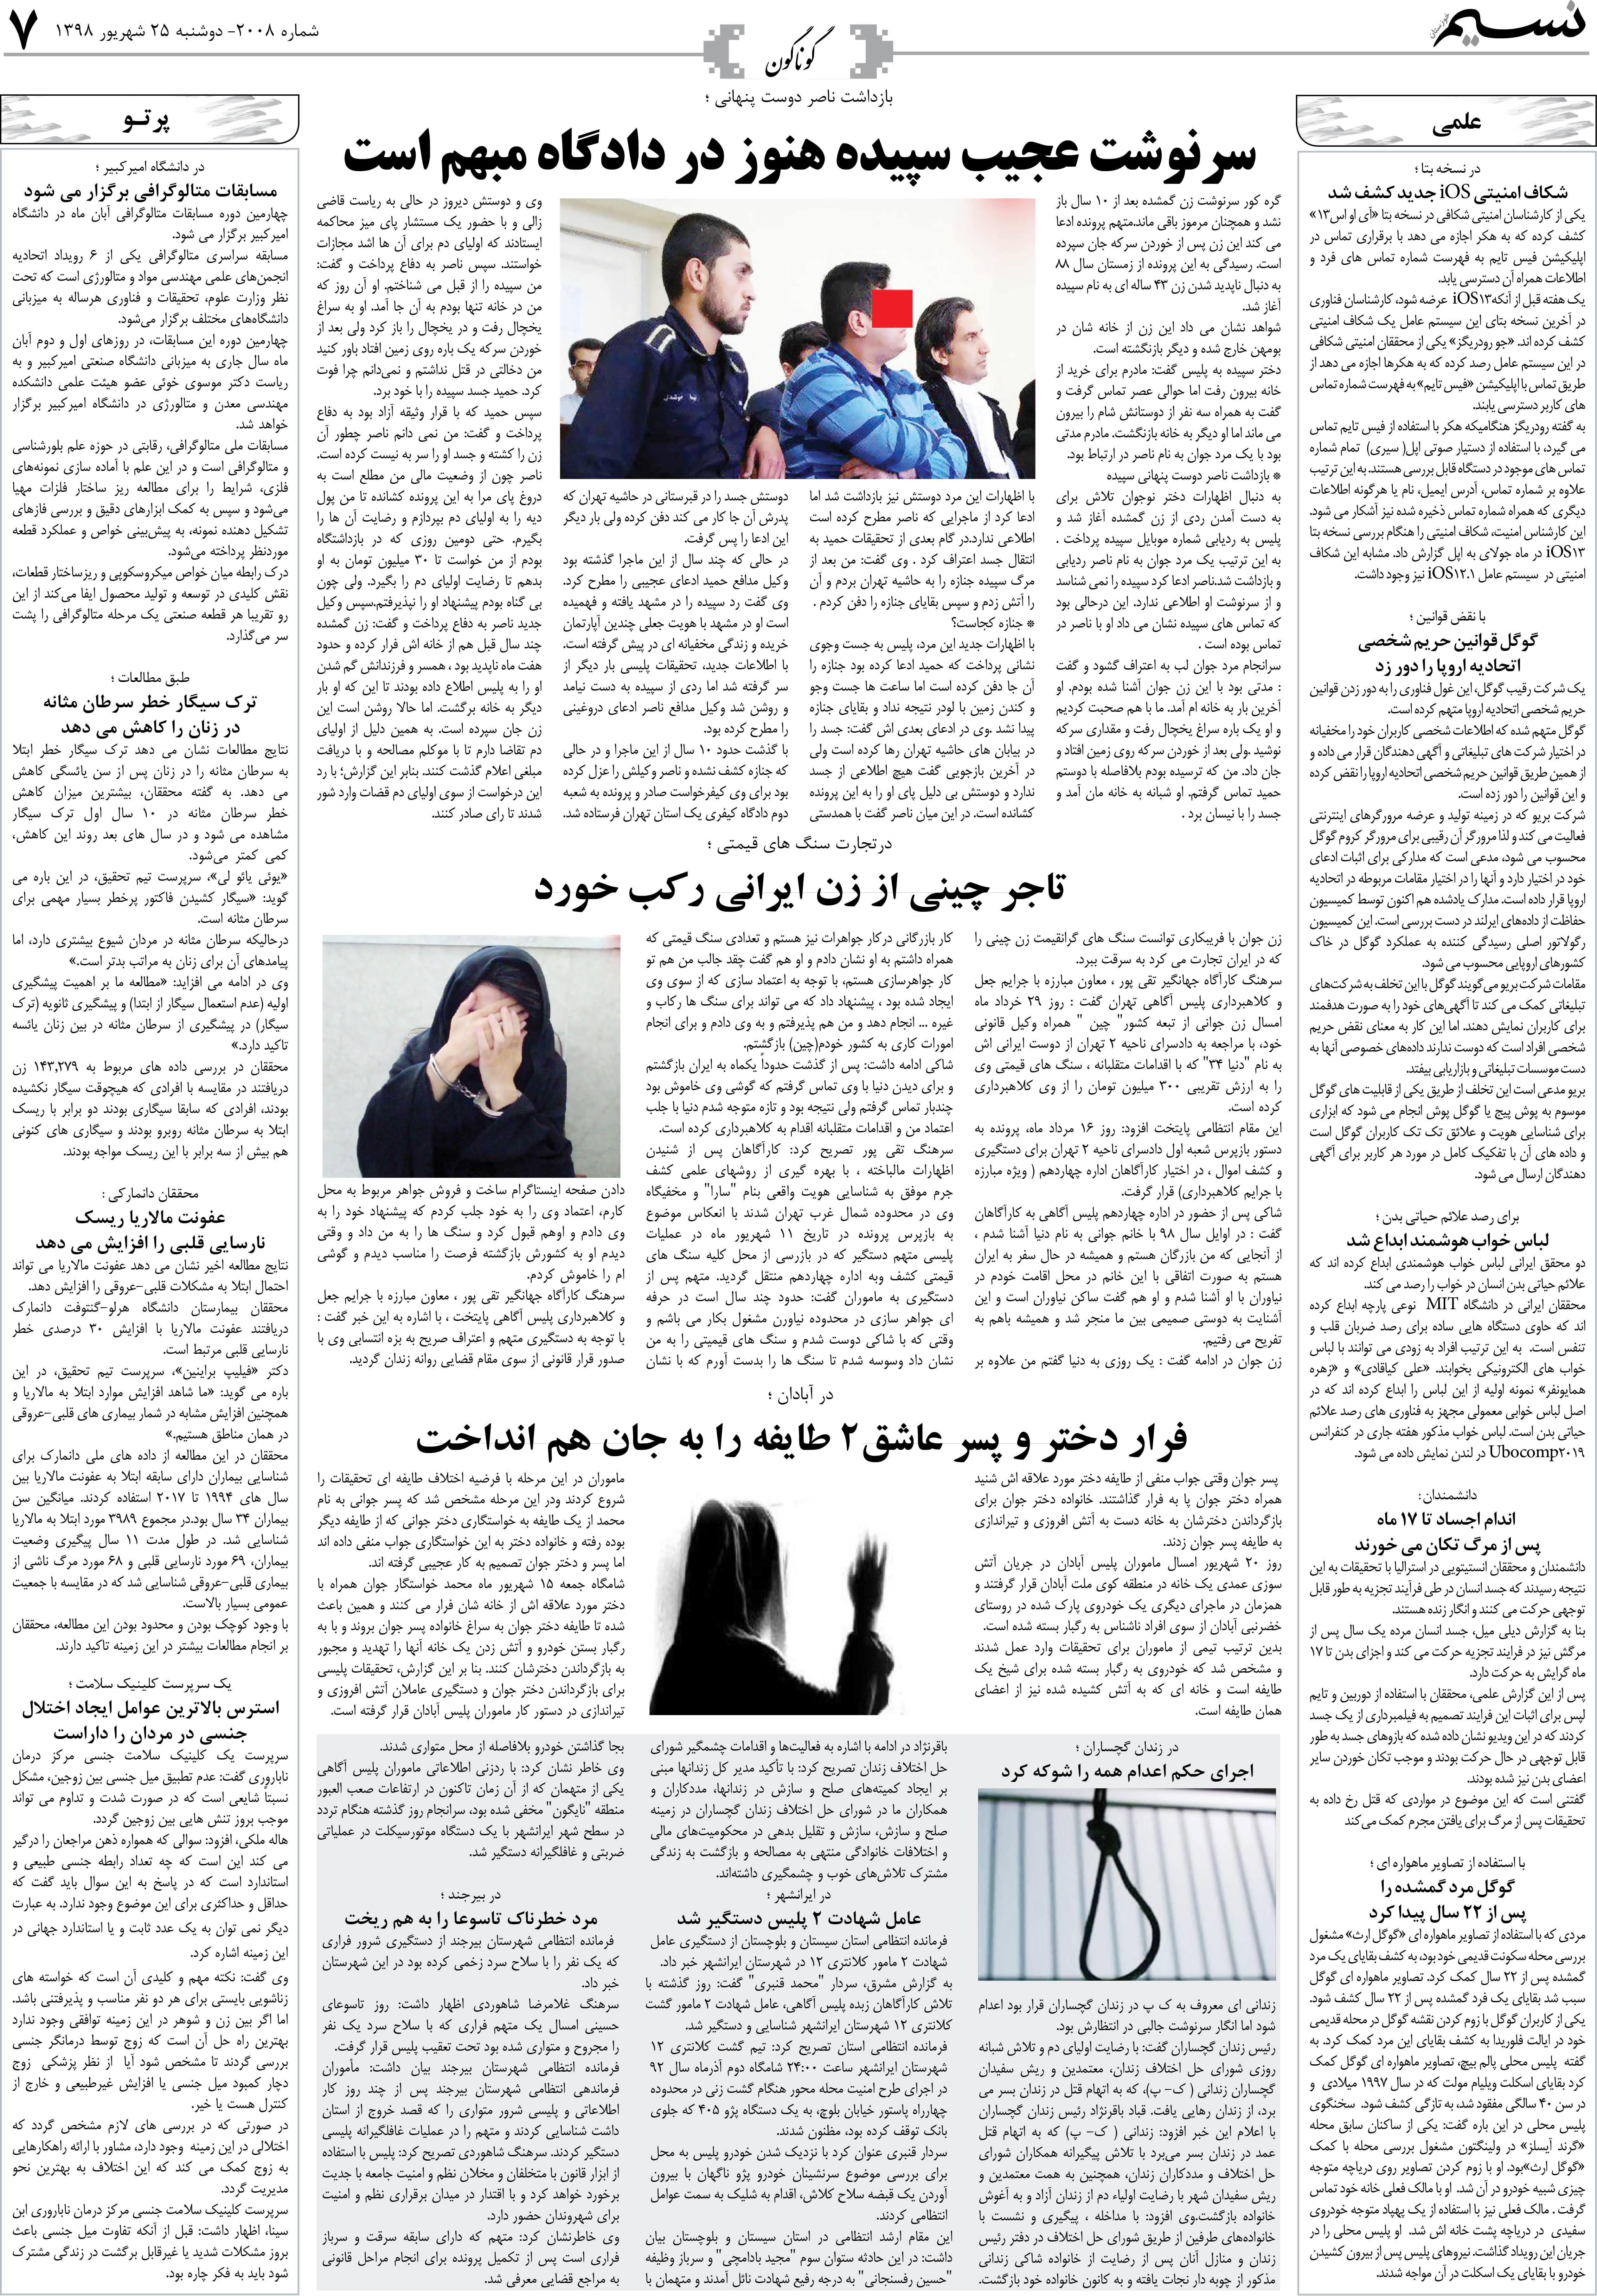 صفحه گوناگون روزنامه نسیم شماره 2008